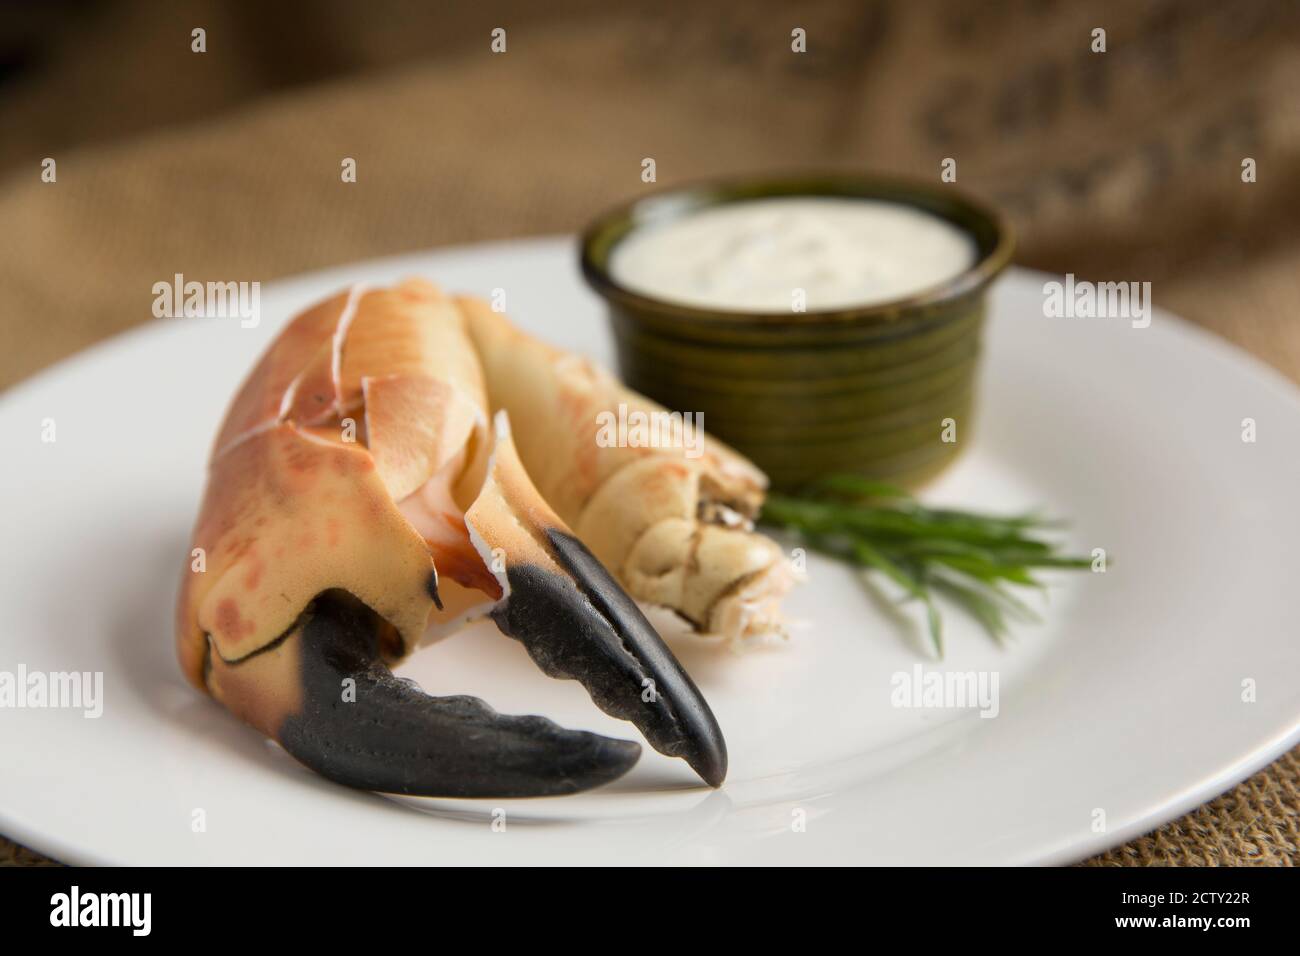 Eine gekochte, rissige Krabbenklaue aus einer braunen Krabbe, Cancer Pagurus, die mit Knoblauch, Estragon und Zitronenmayonnaise serviert wurde. Dorset England GB Stockfoto